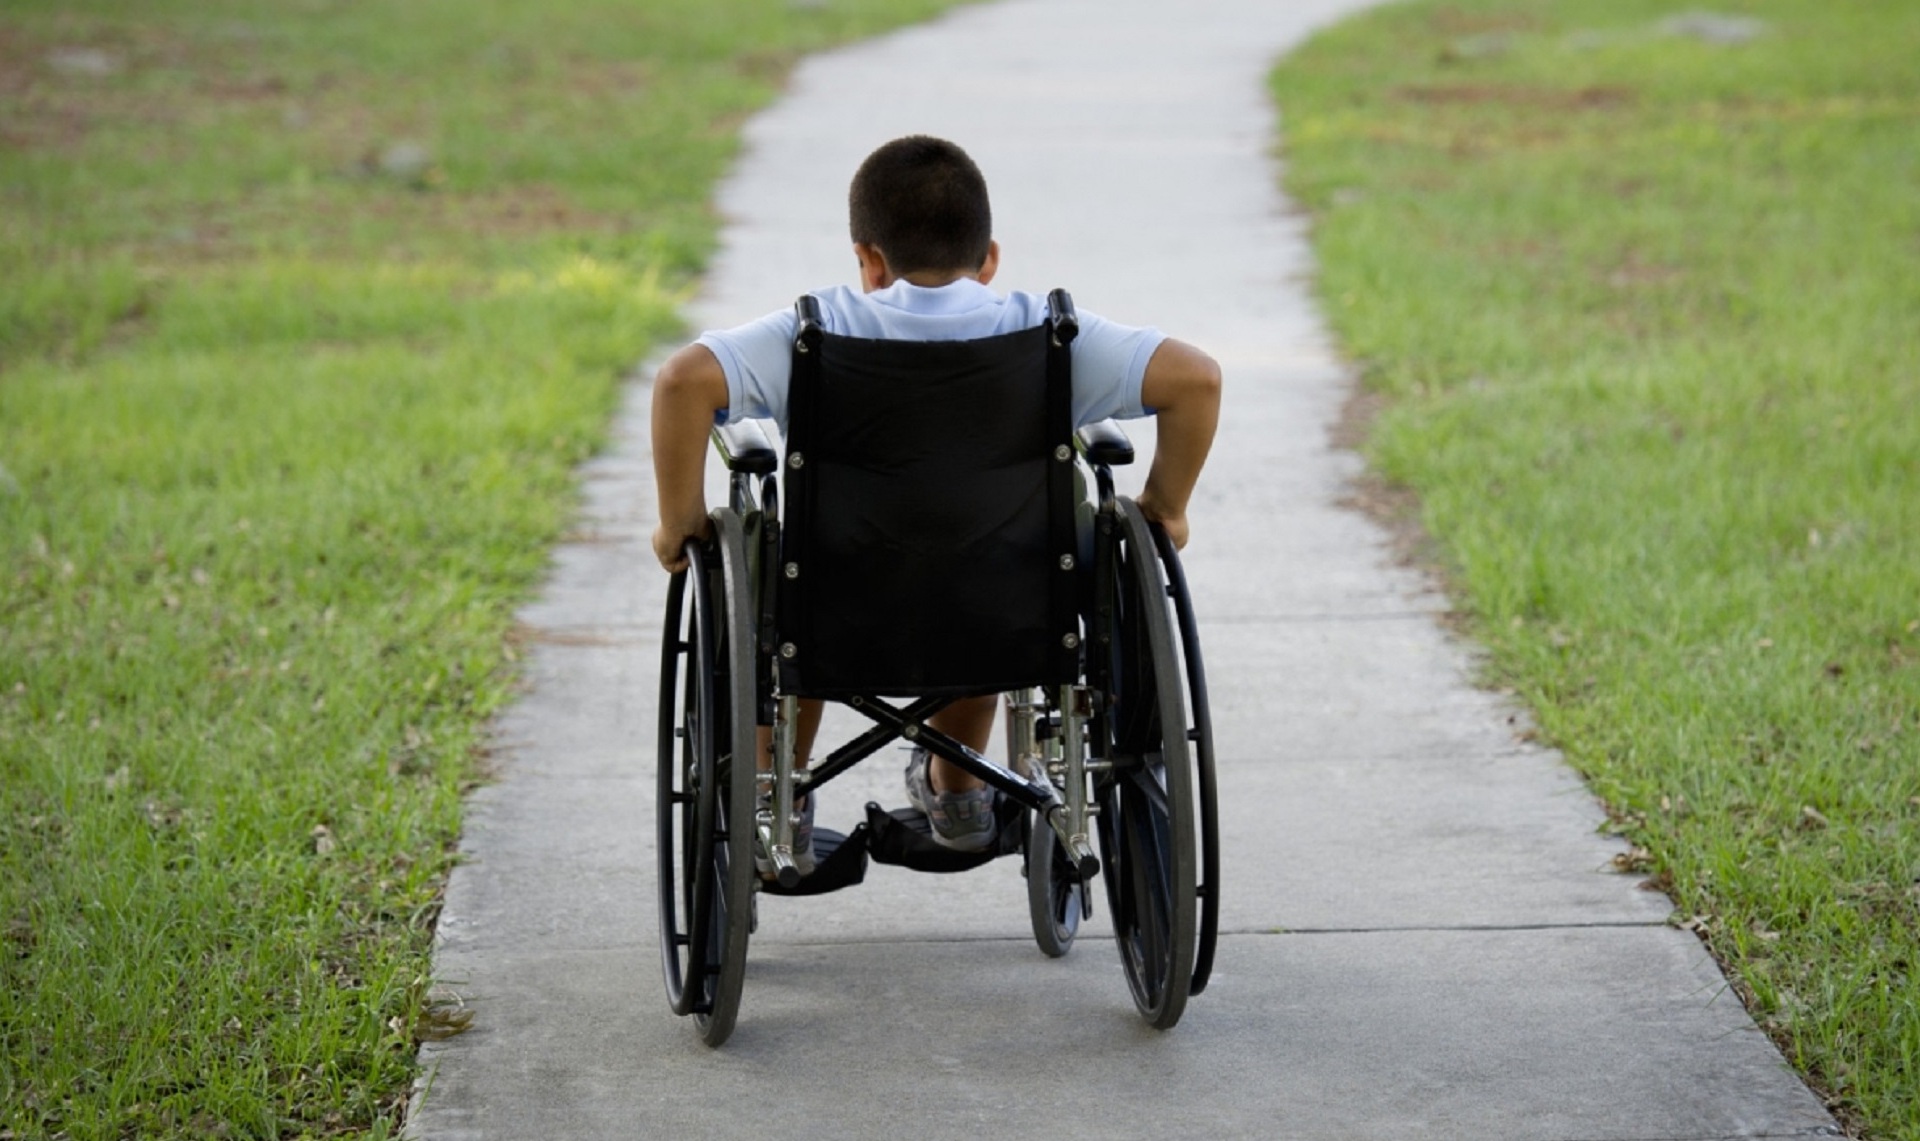 Пособие детям с инвалидностью будут выдавать вне зависимости от обращения